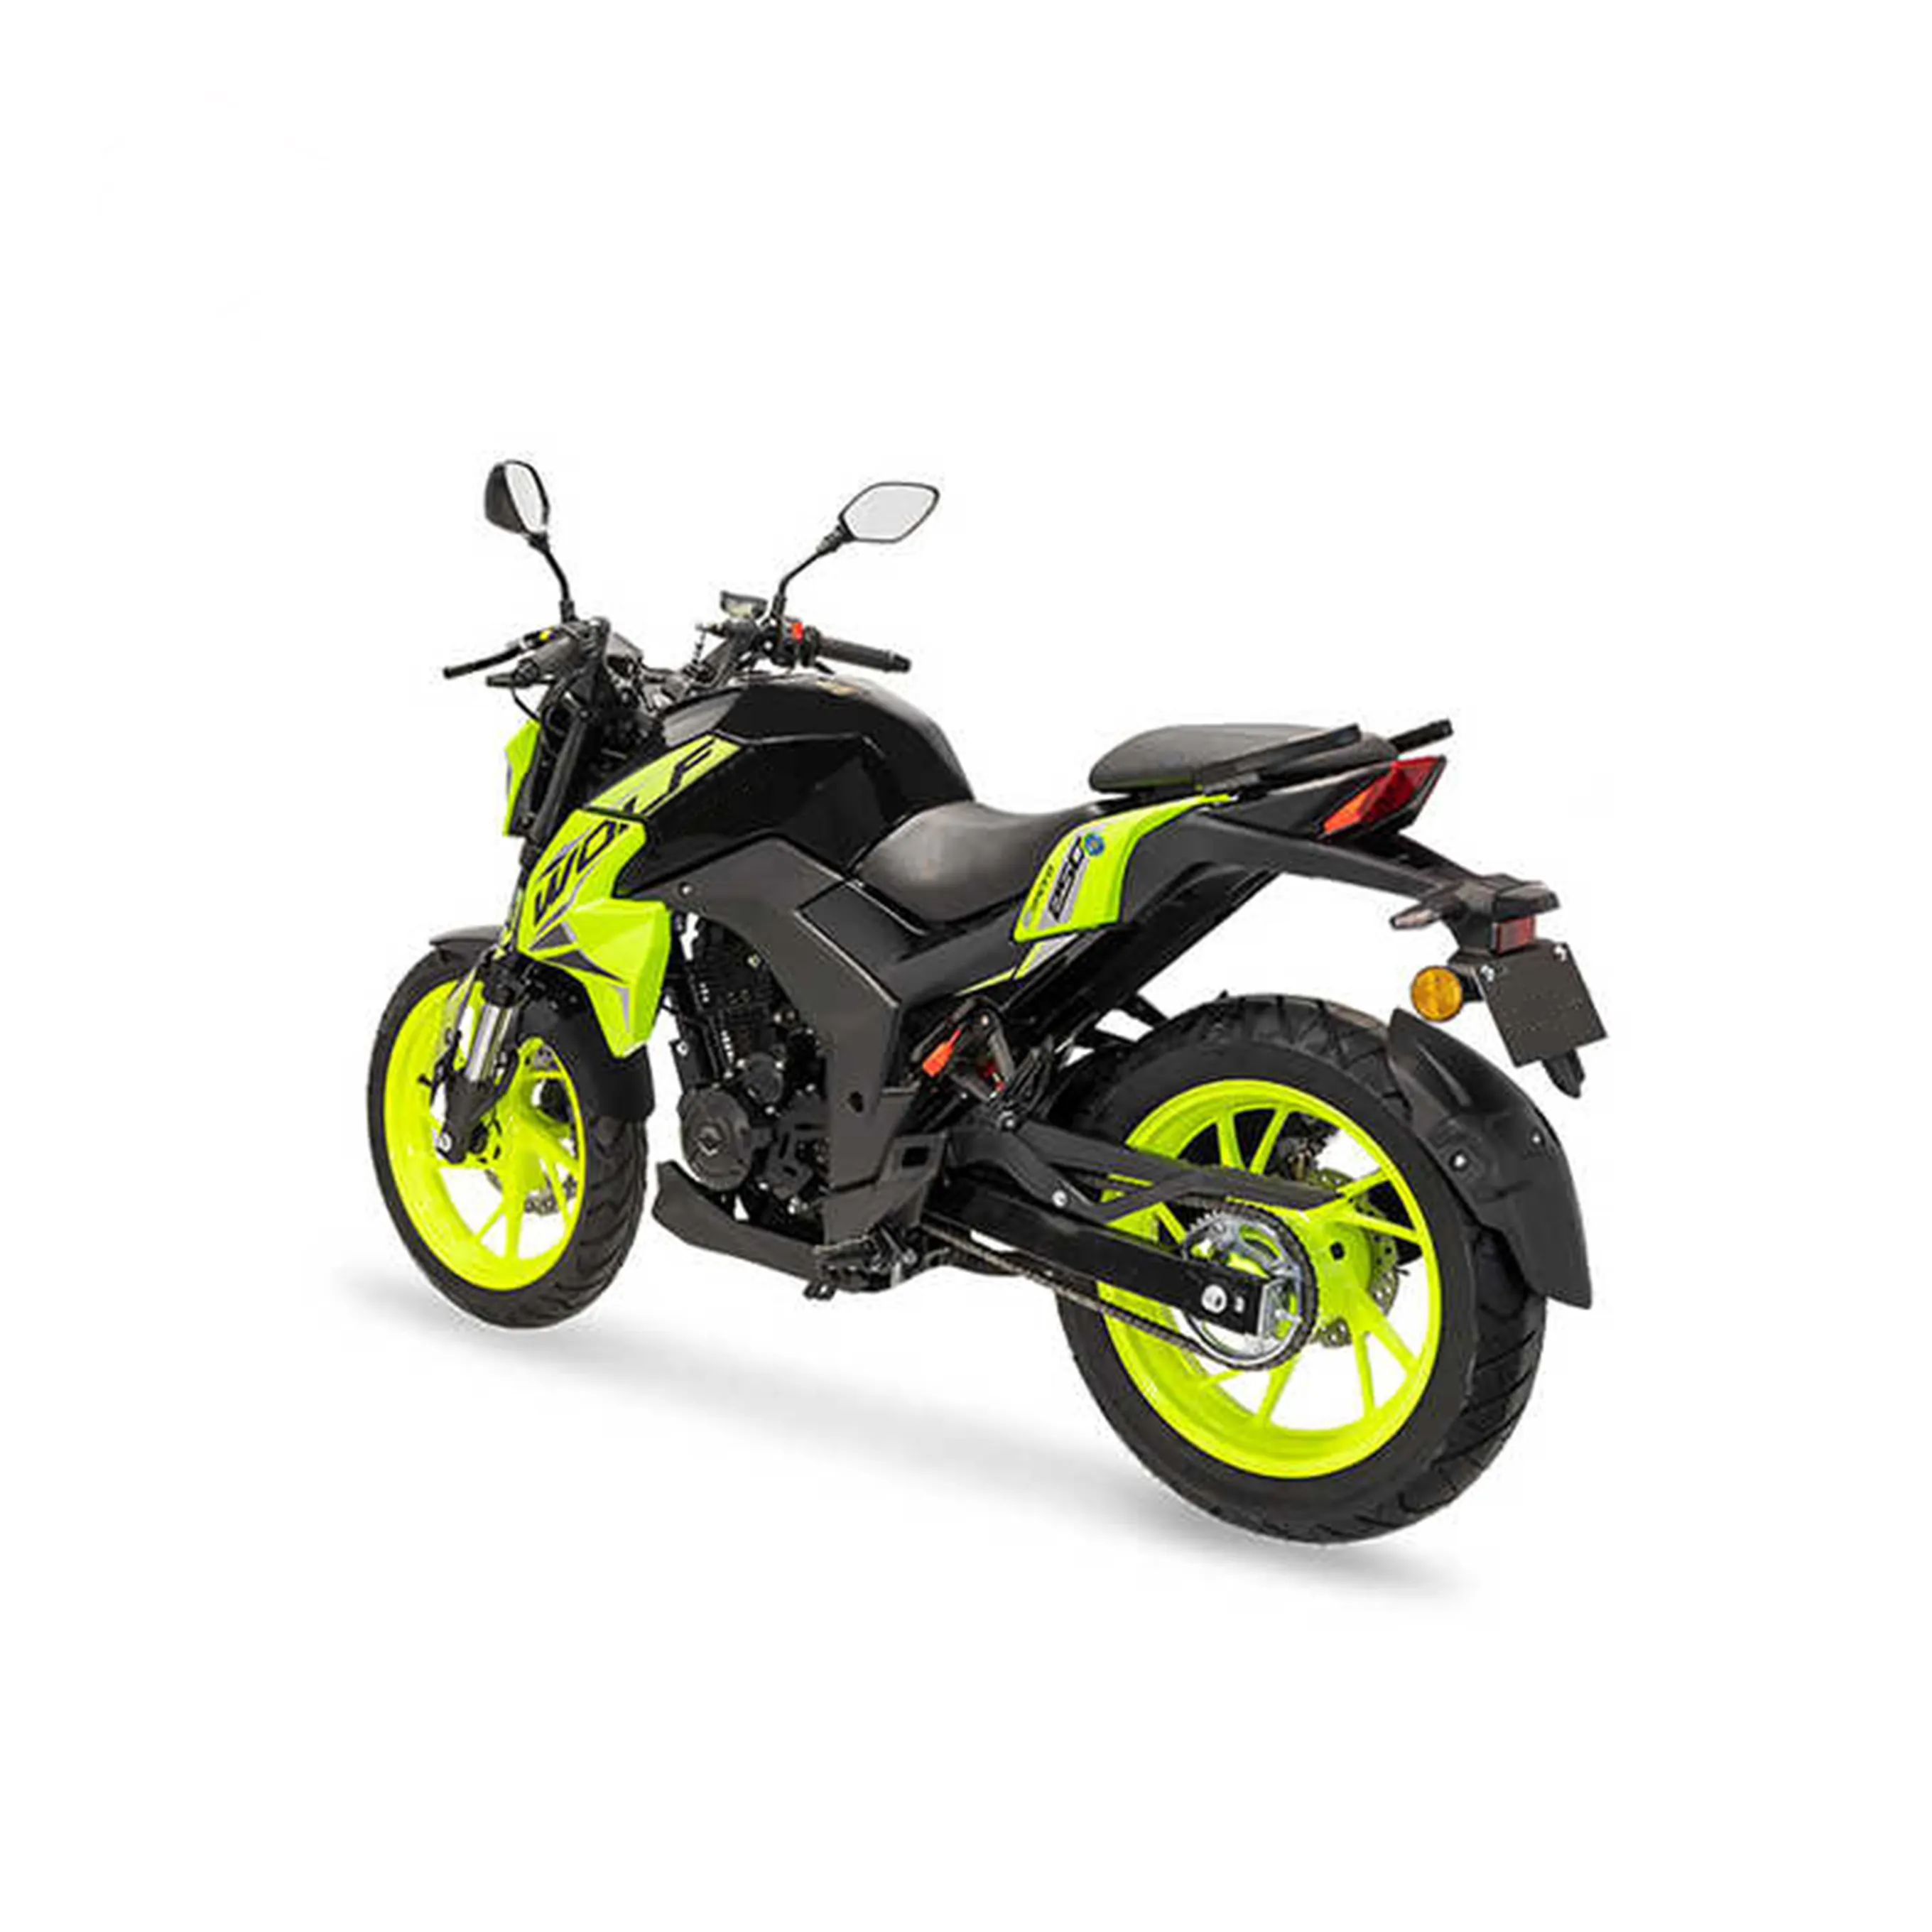 Kavaki Hoge Kwaliteit Motorfiets 150cc 4 Takt 125cc Crossmotor Off-Road Motorfietsen